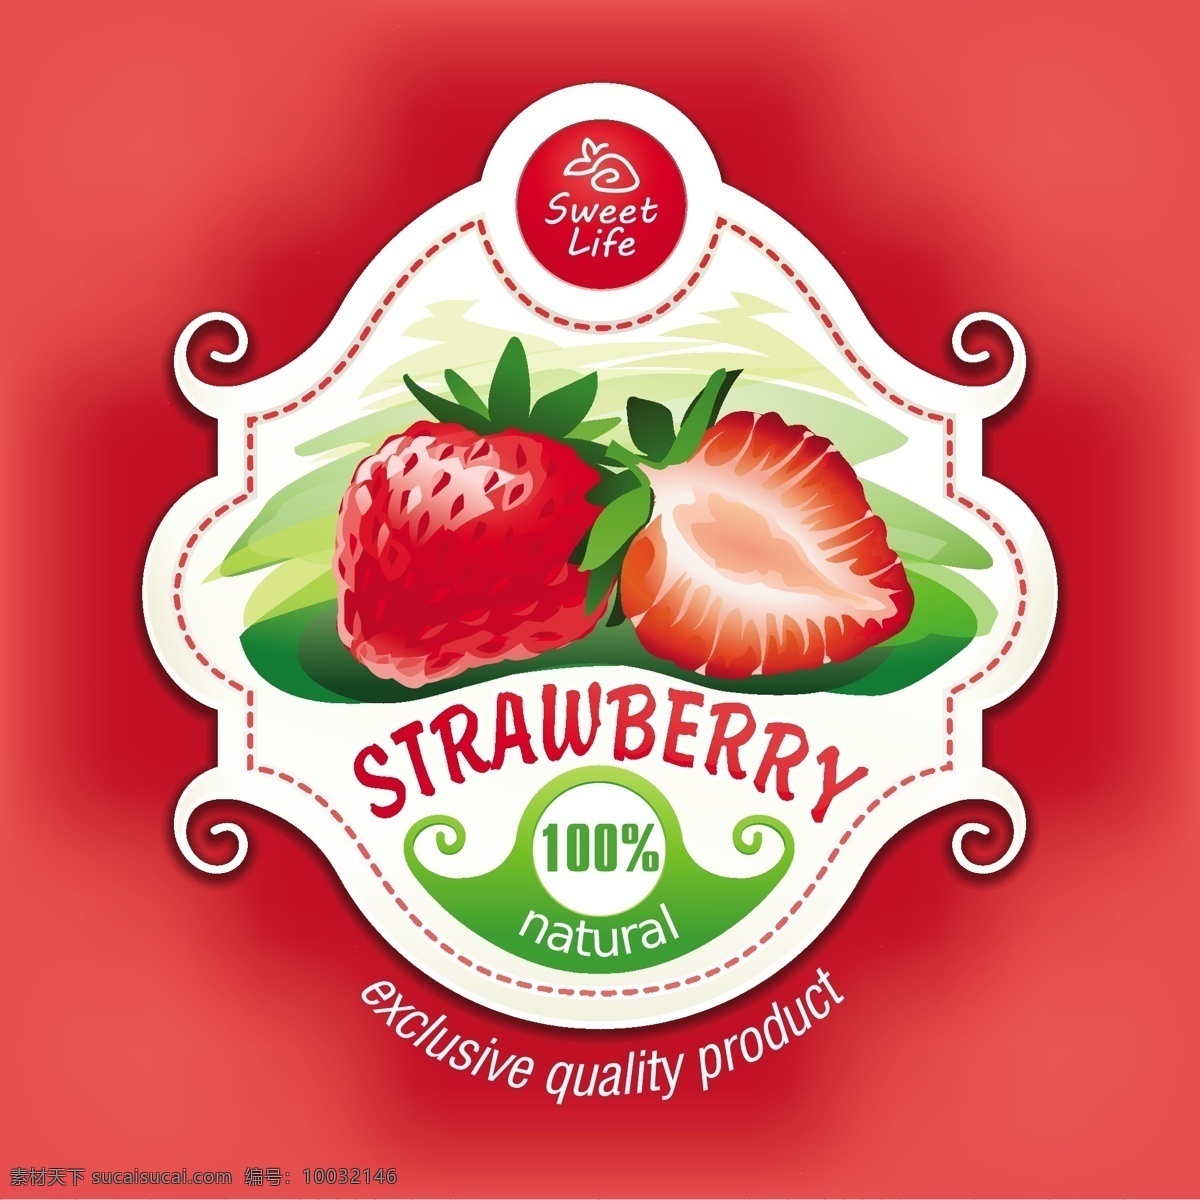 向量 草莓 叶 插图 背景 框架 食物 标签 图标 夏天 模板 叶子 自然 红色 红色背景 水果 健康 包装 艺术 颜色 白色背景 植物